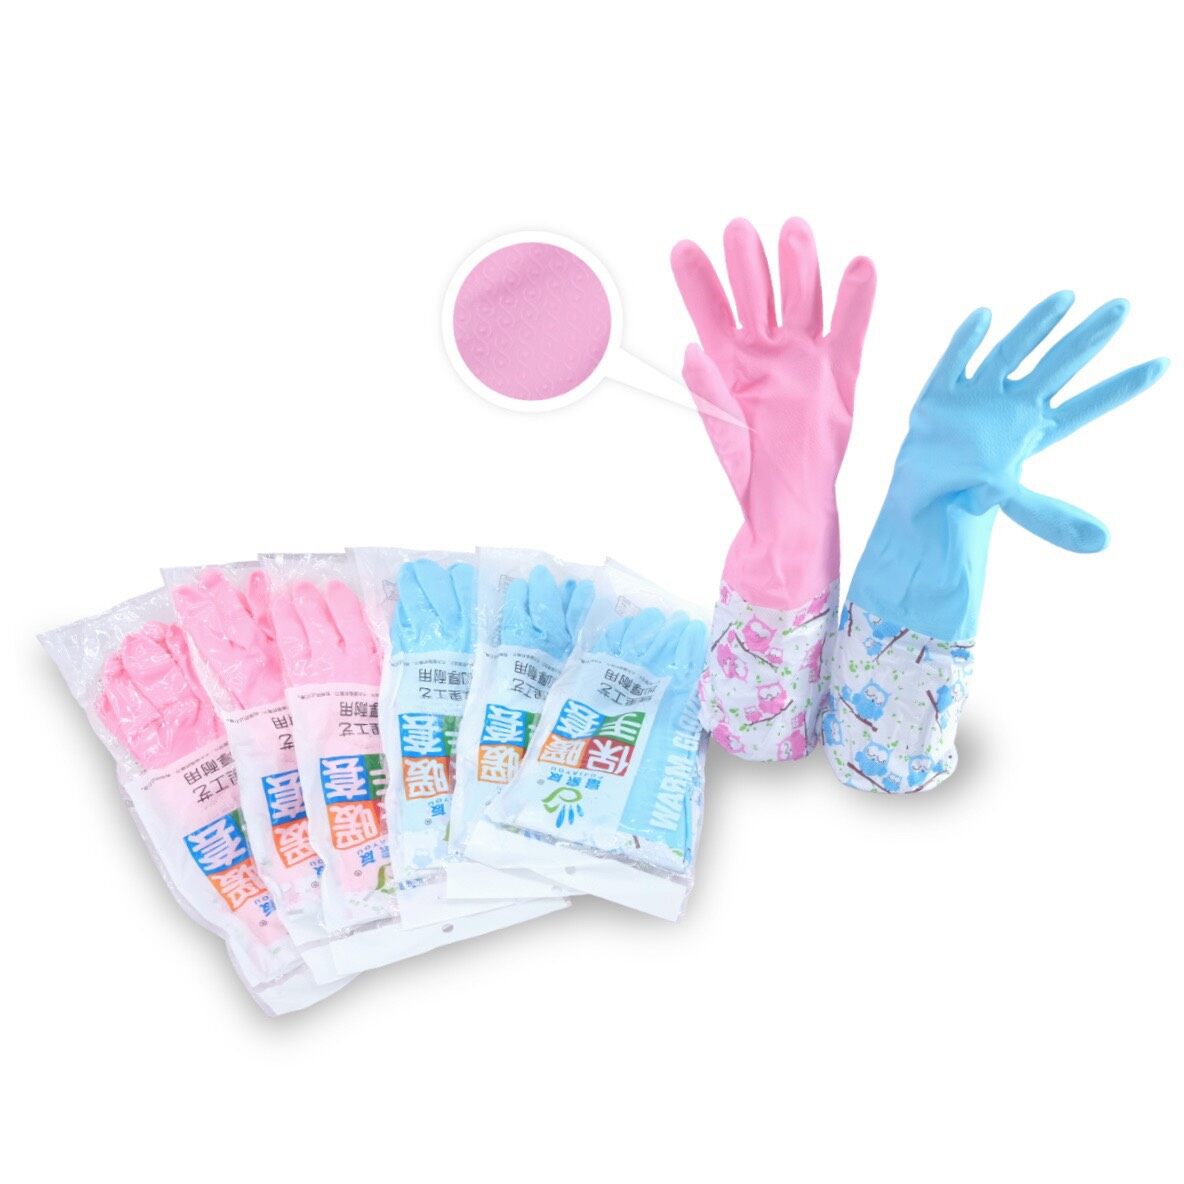 ถุงมือยาง ถุงมือทำความสะอาด ถุงมืออเนกประสงค์ ถุงมือ ถุงมือล้างจาน ปลายจั้ม ถุงมือราคาส่ง ถุงมือราคาถูก